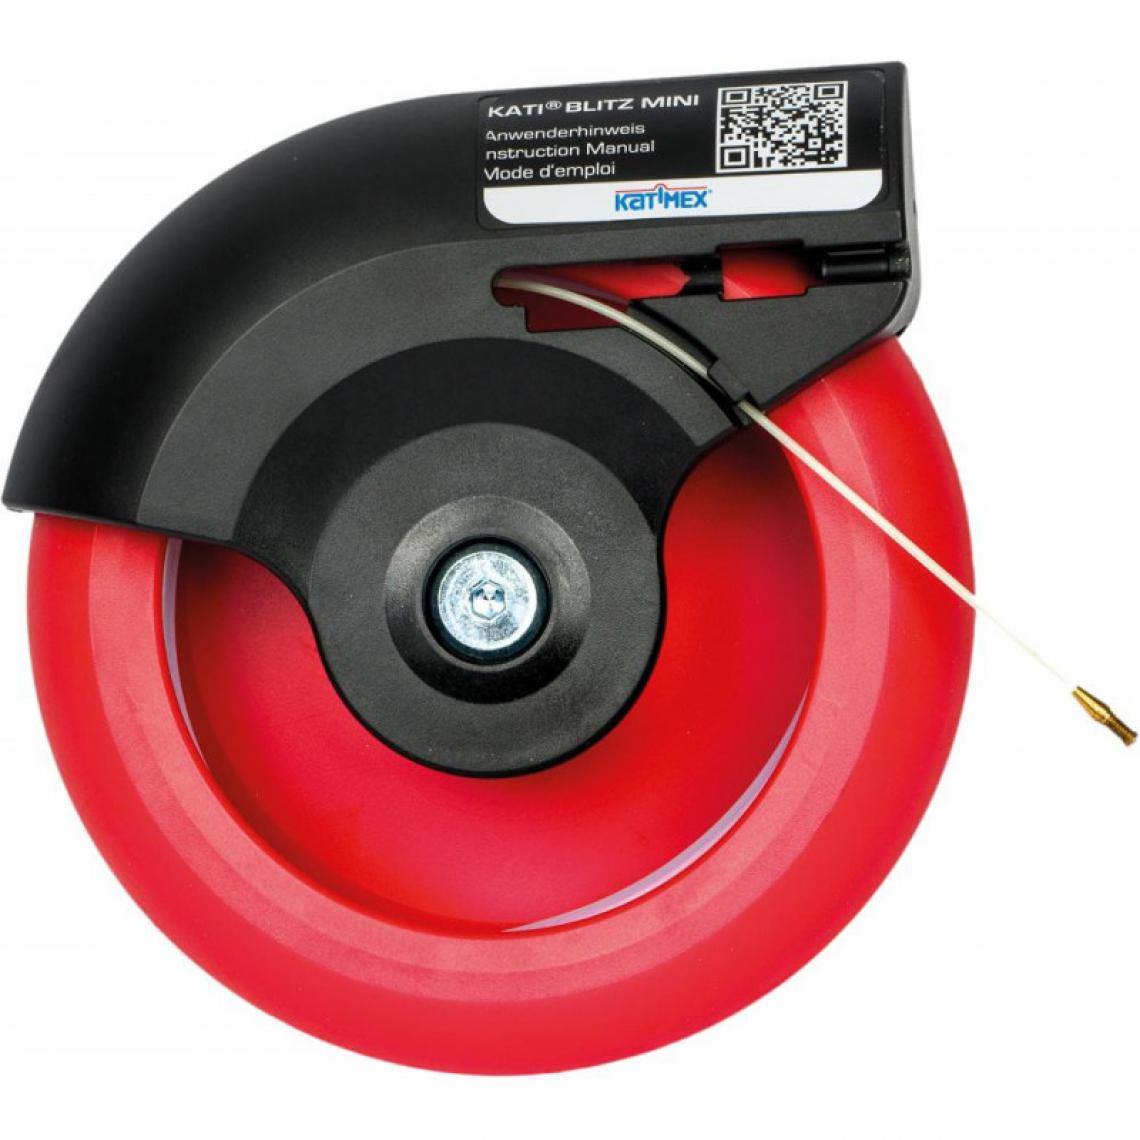 marque generique - Tire cable 35m Katimex - Fils et câbles électriques